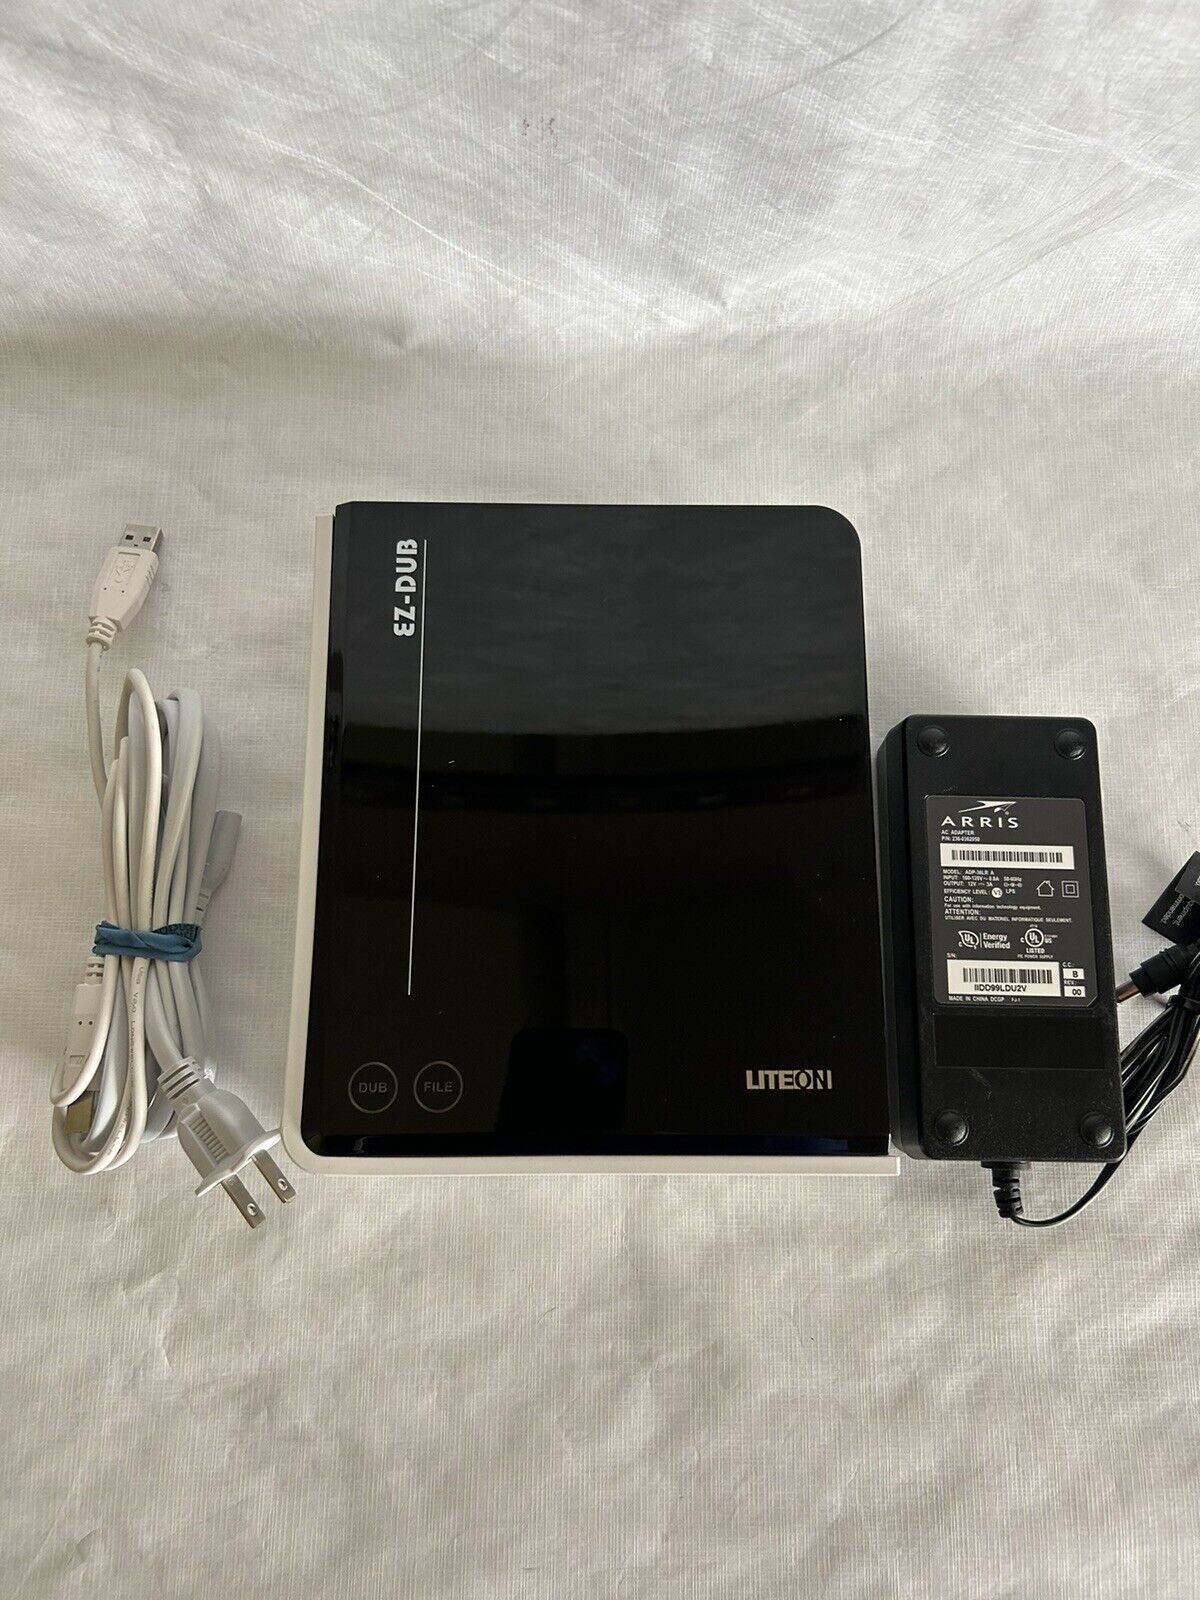 LiteON EZ-DUB SmartErase 22x USB External DVD/CD Recorder  eZAU422